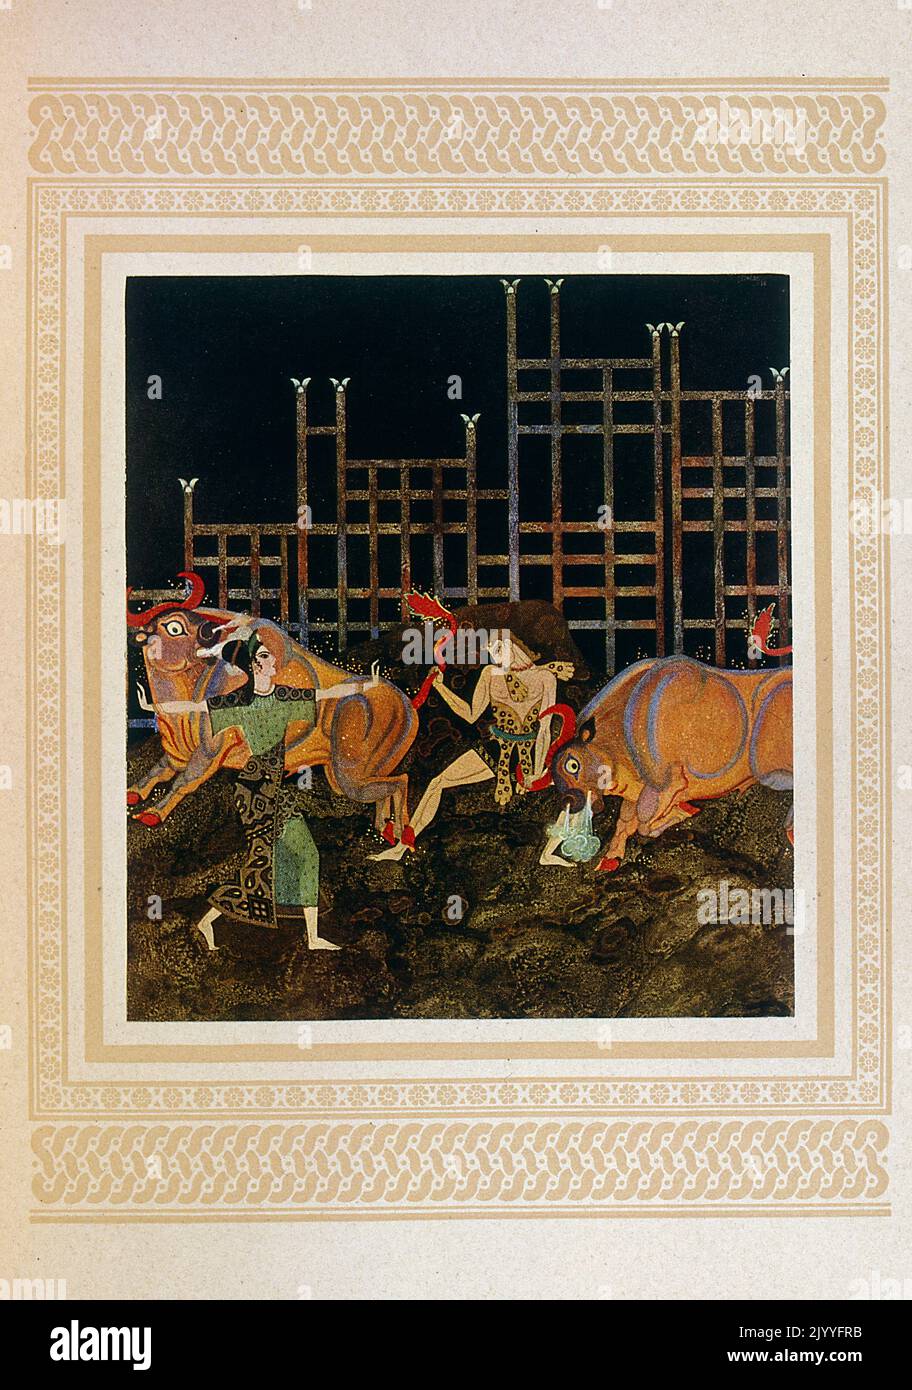 Illustrazione colorata di donne che corrono con tori. Illustrato da Edmund Dulac (1882-1953), una rivista naturalizzata francese britannica e illustratore di libri. Foto Stock